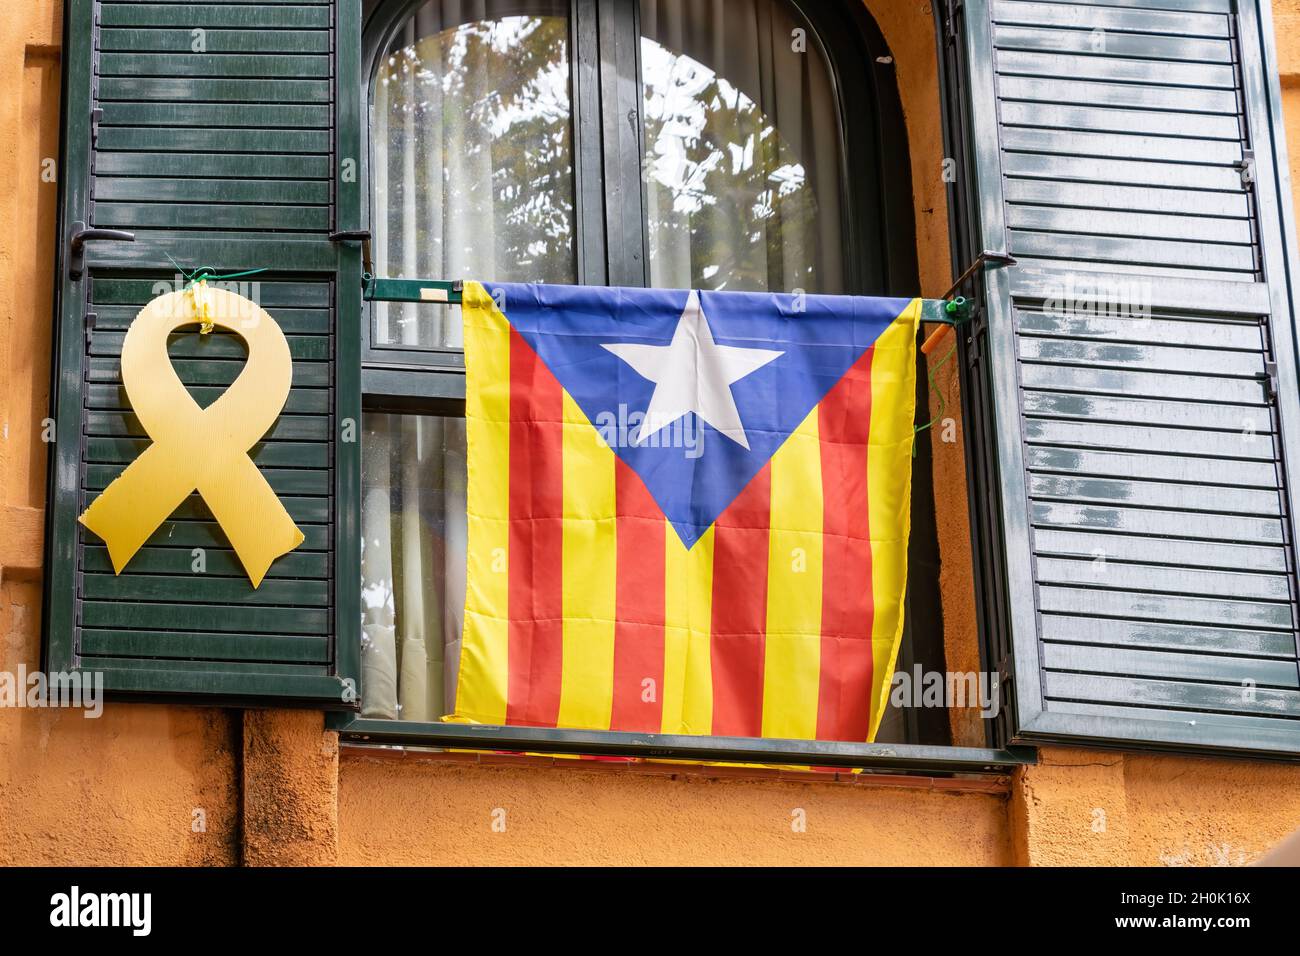 Katalanische Unabhängigkeitsfahne und gelbes Band, das an einem Fenster hängt, fordern die Unabhängigkeit Kataloniens und die Freiheit des inhaftierten Politikers Stockfoto